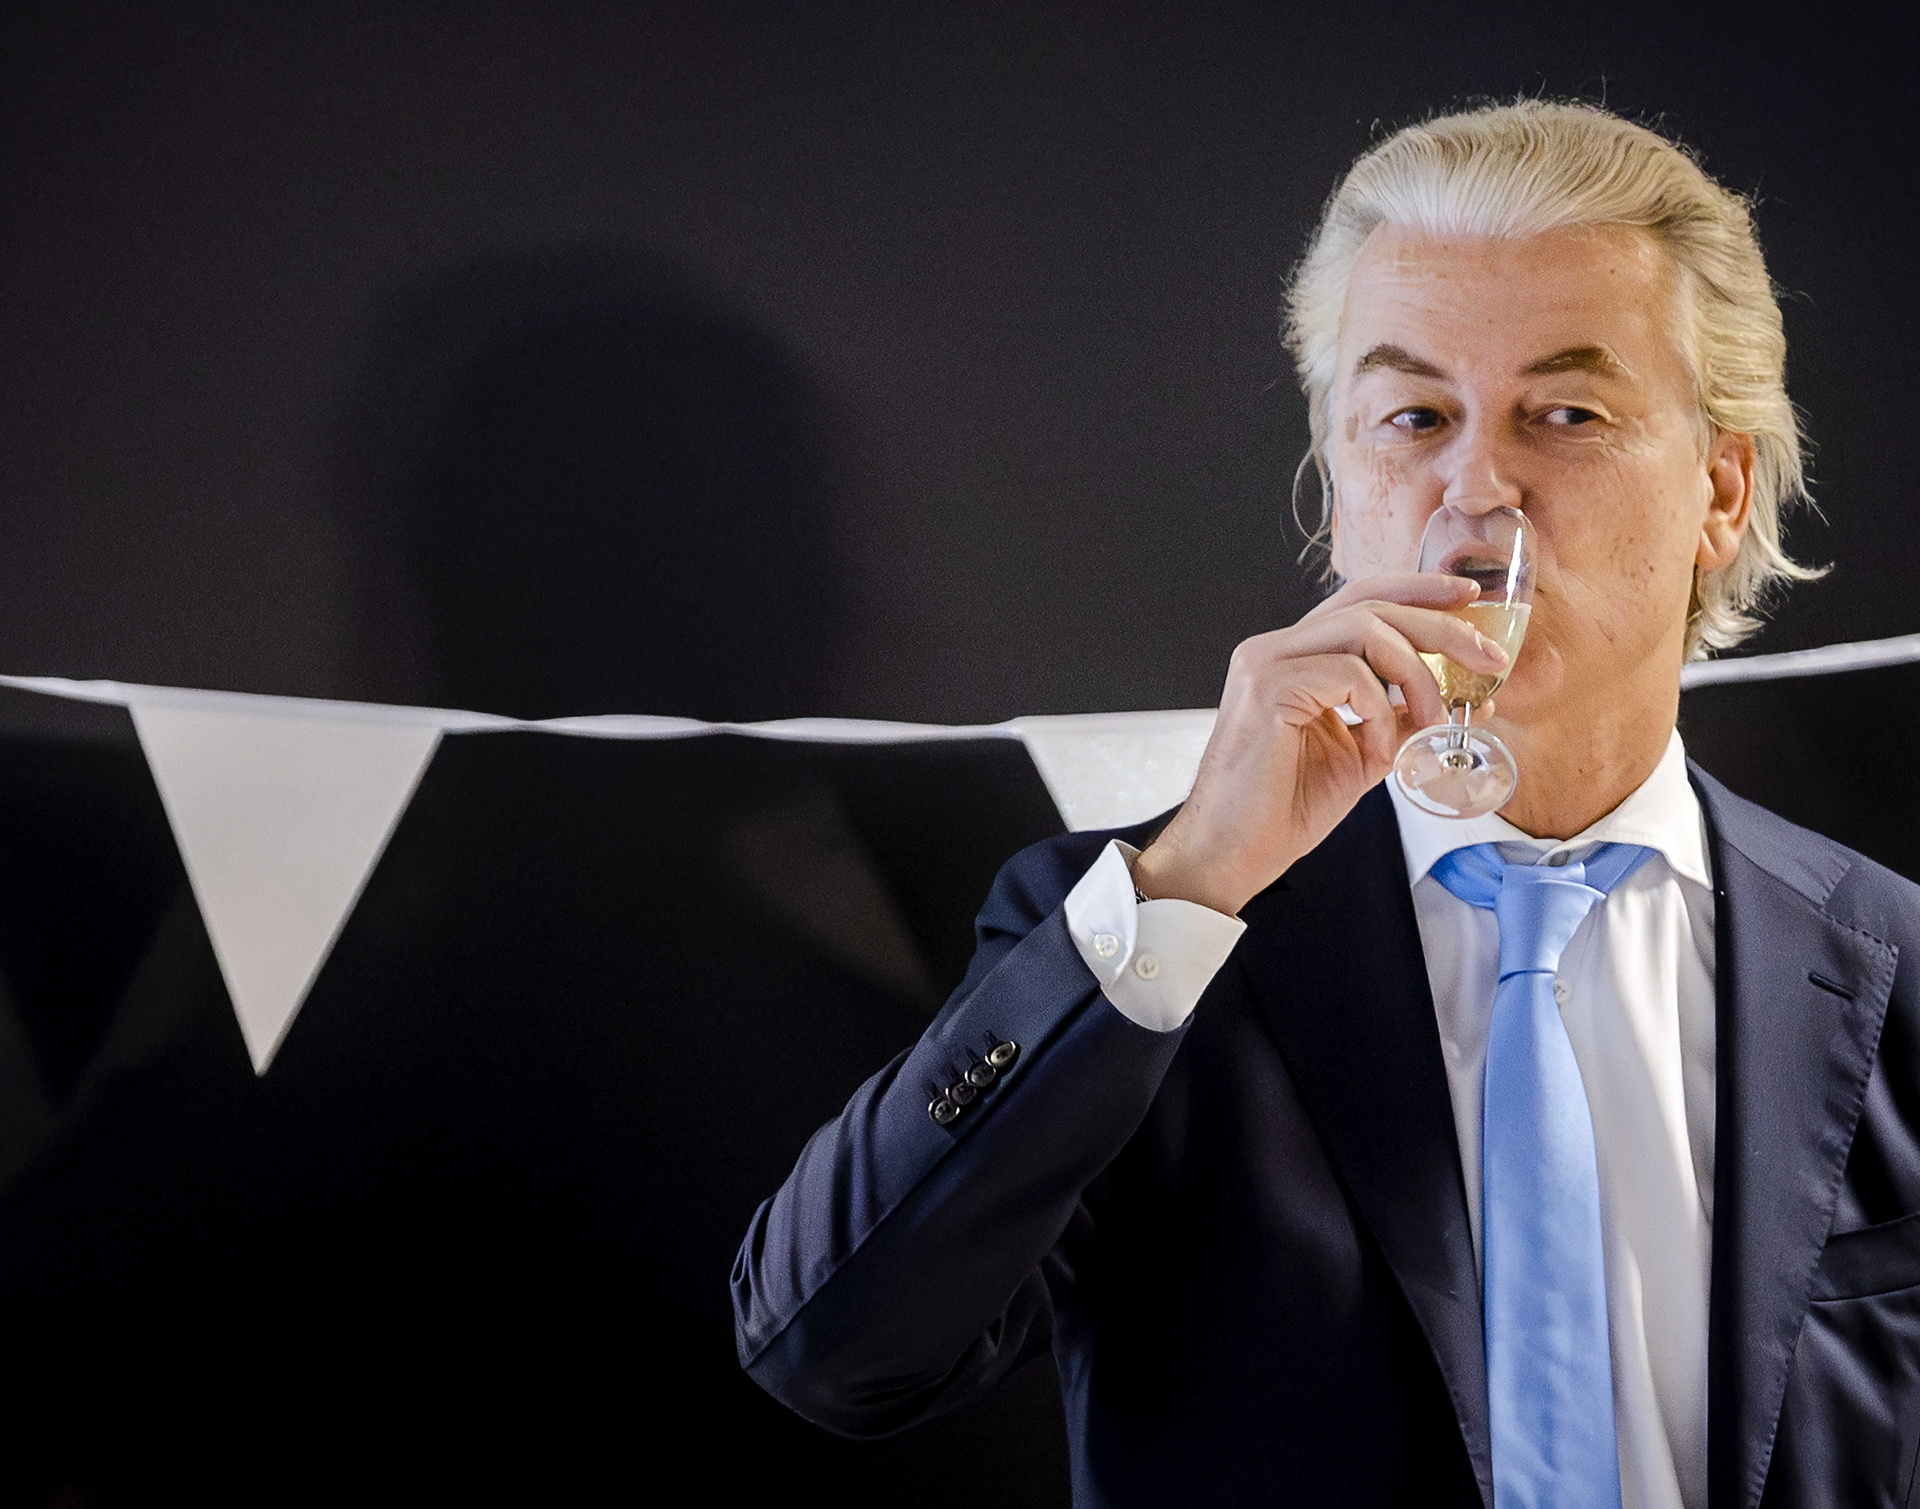 Populista opositor al islam Geert Wilders gana las elecciones generales en Países Bajos